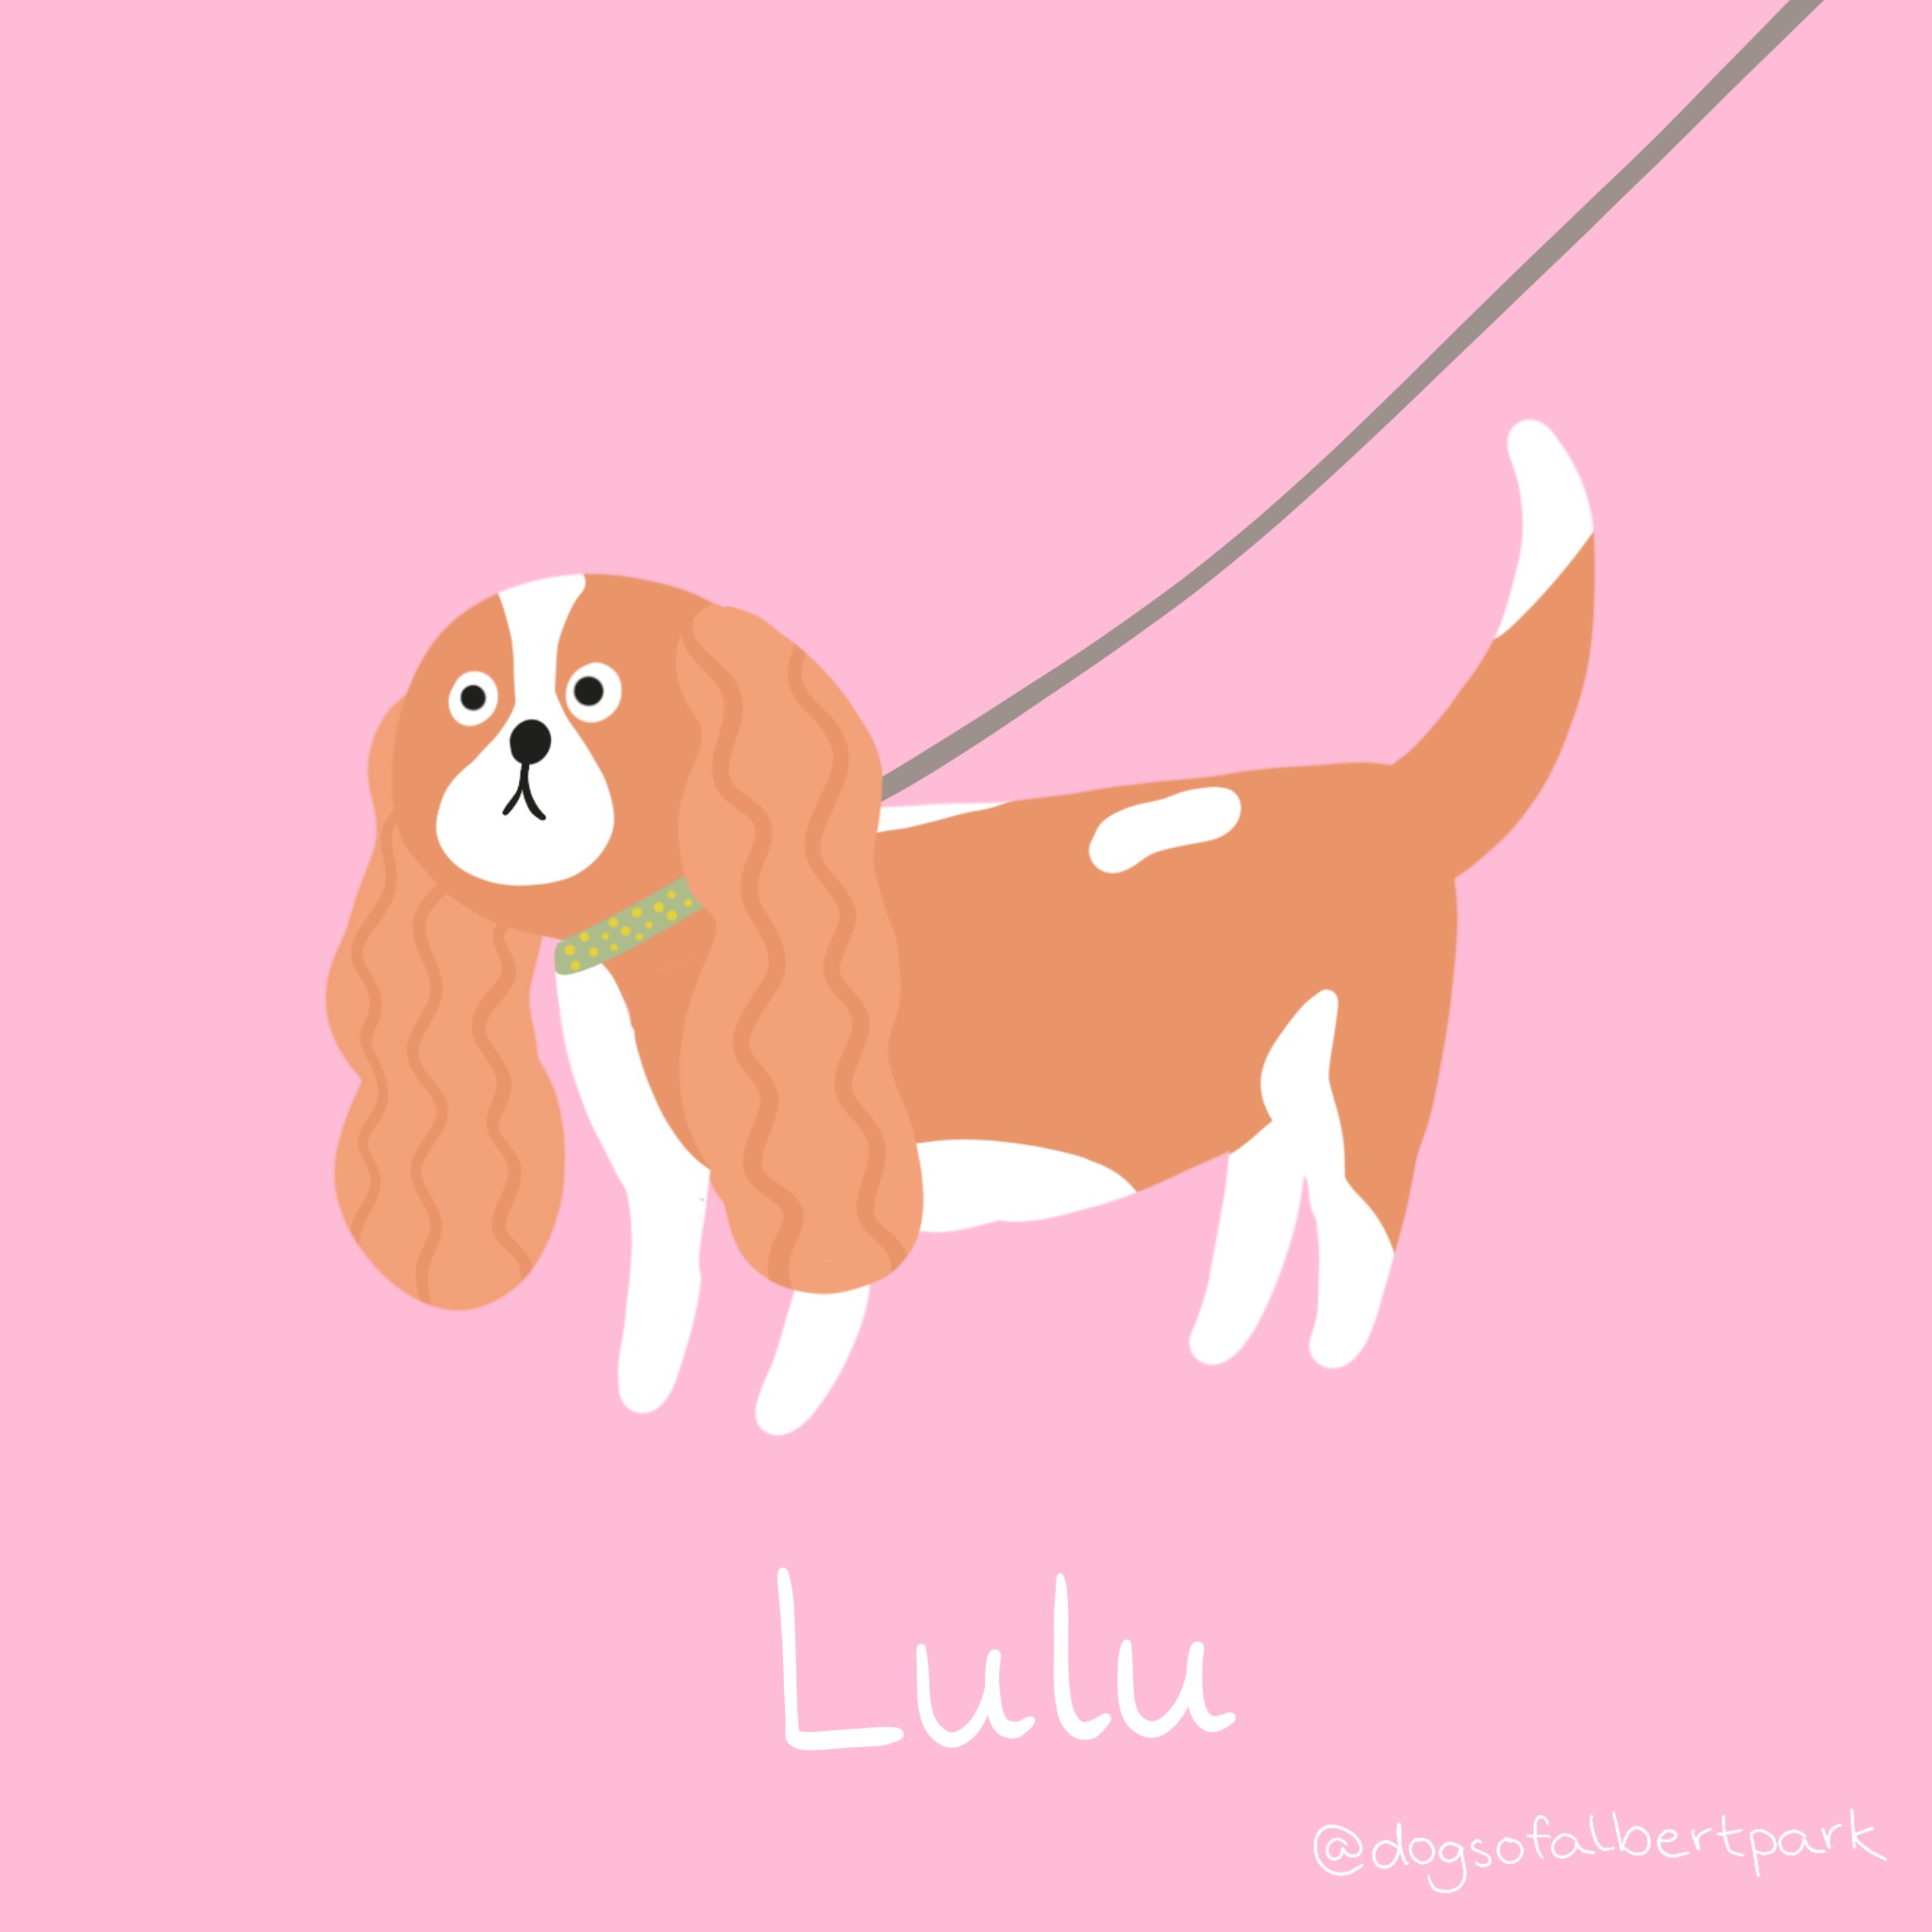 Lulu is one of Ms Myrvangs dogs 